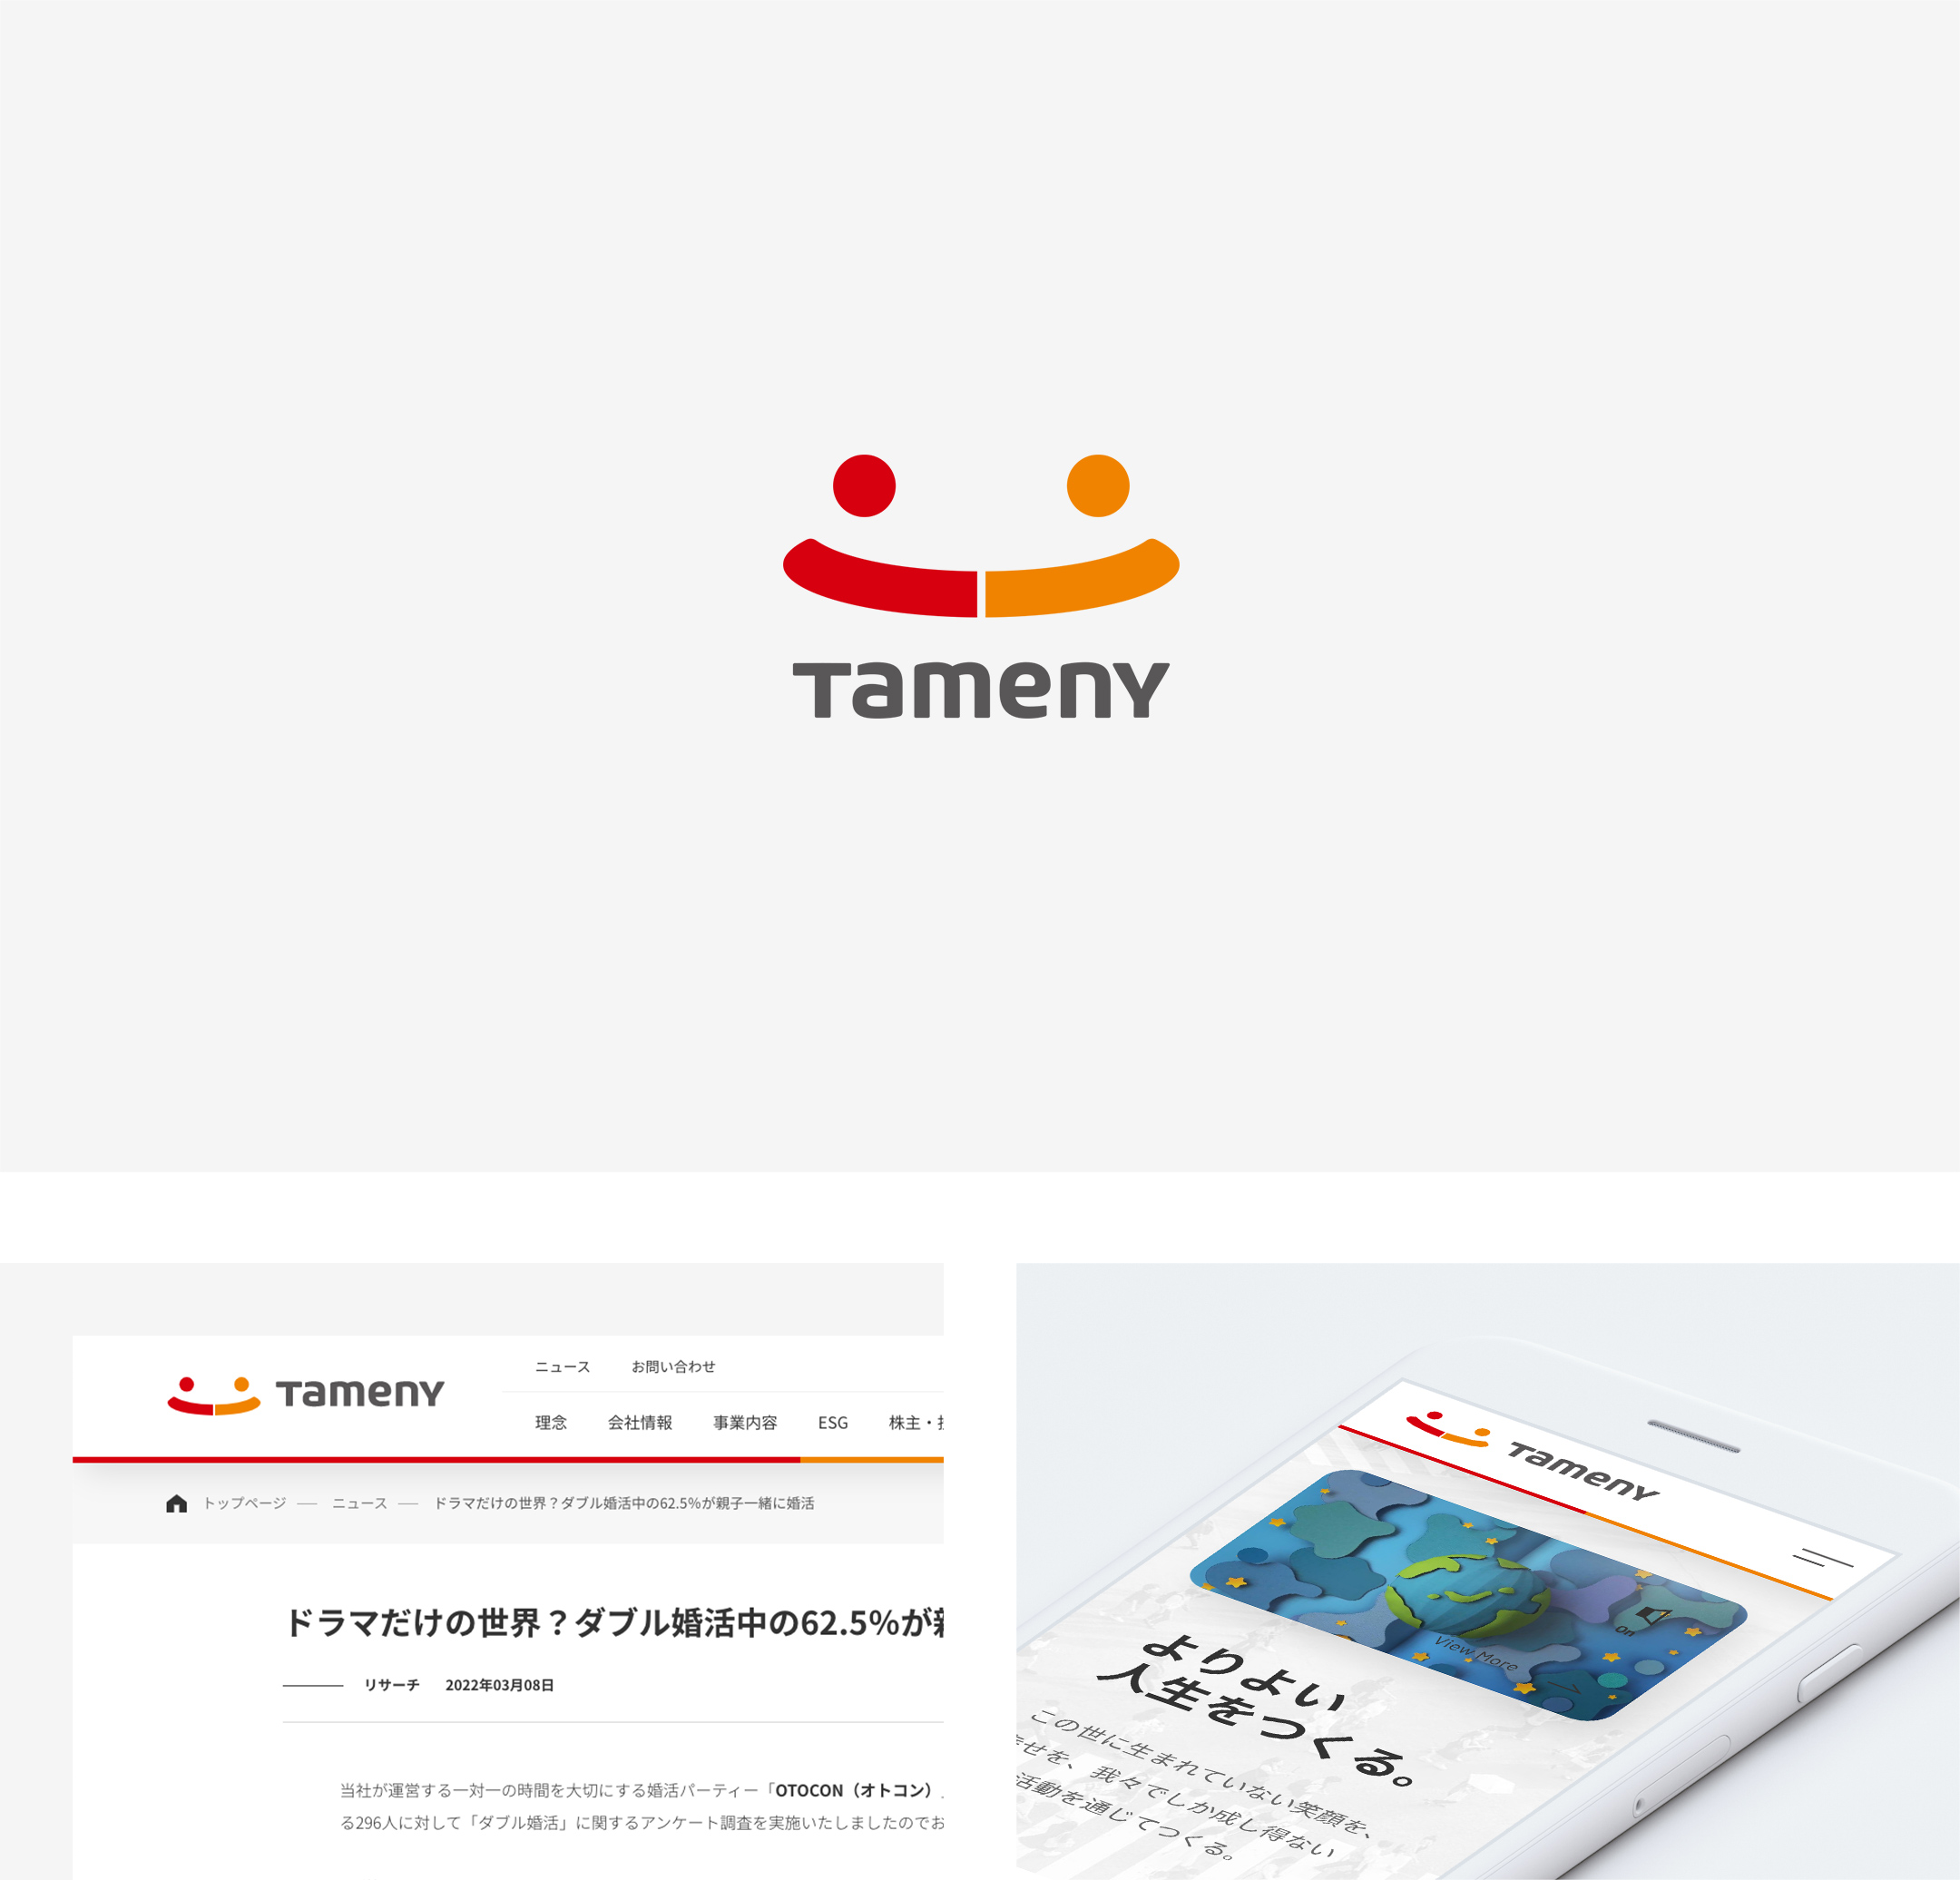 タメニー株式会社 / Tameny Inc.